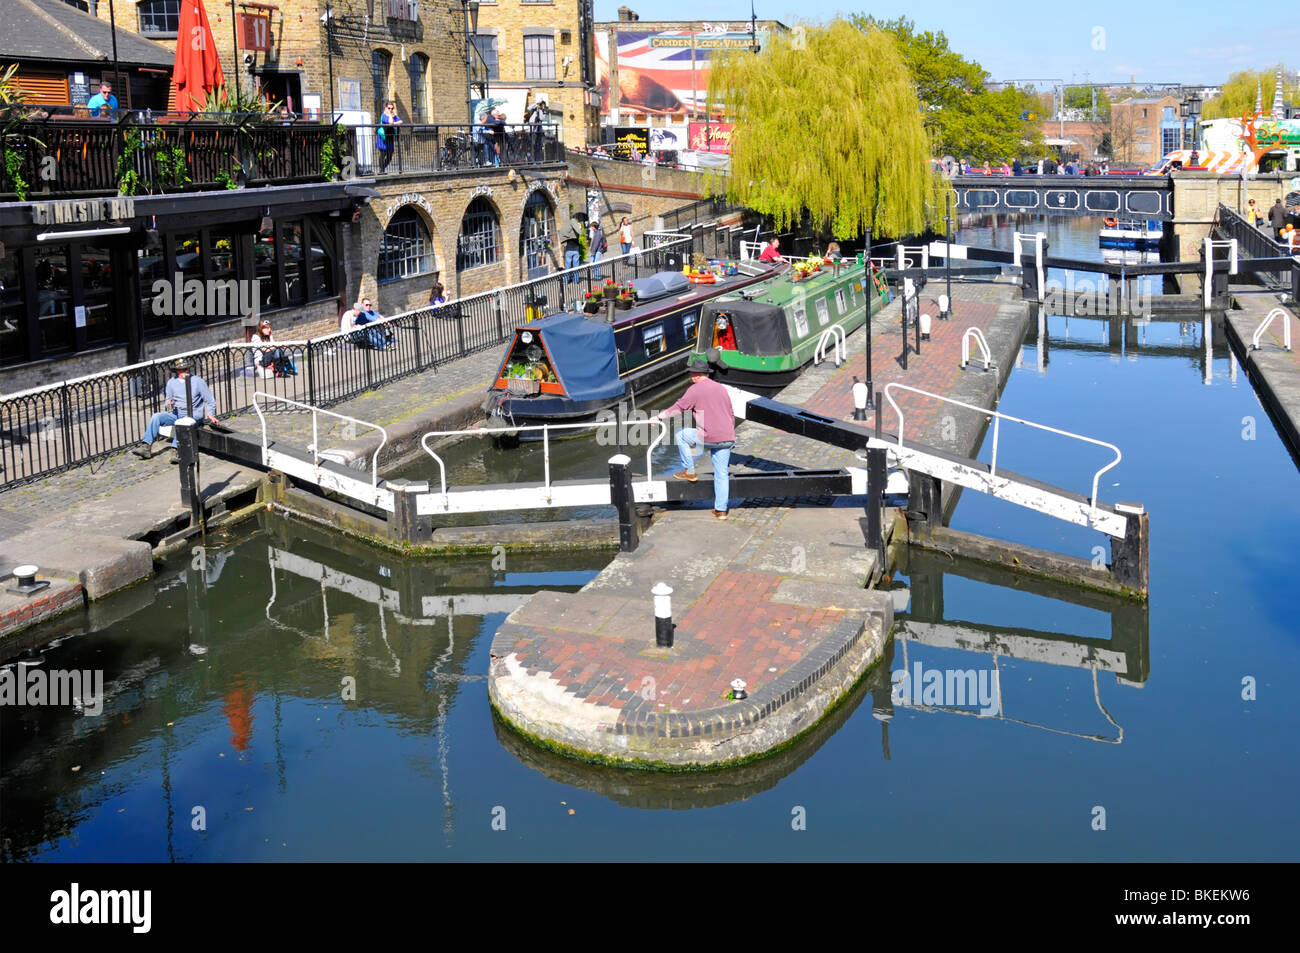 Vue sur les portes fermées, paysage urbain ensoleillé et bateaux étroits Dans Camden Lock sur Regents Canal avec saule pleureur Au-delà du nord de Londres Angleterre Royaume-Uni Banque D'Images